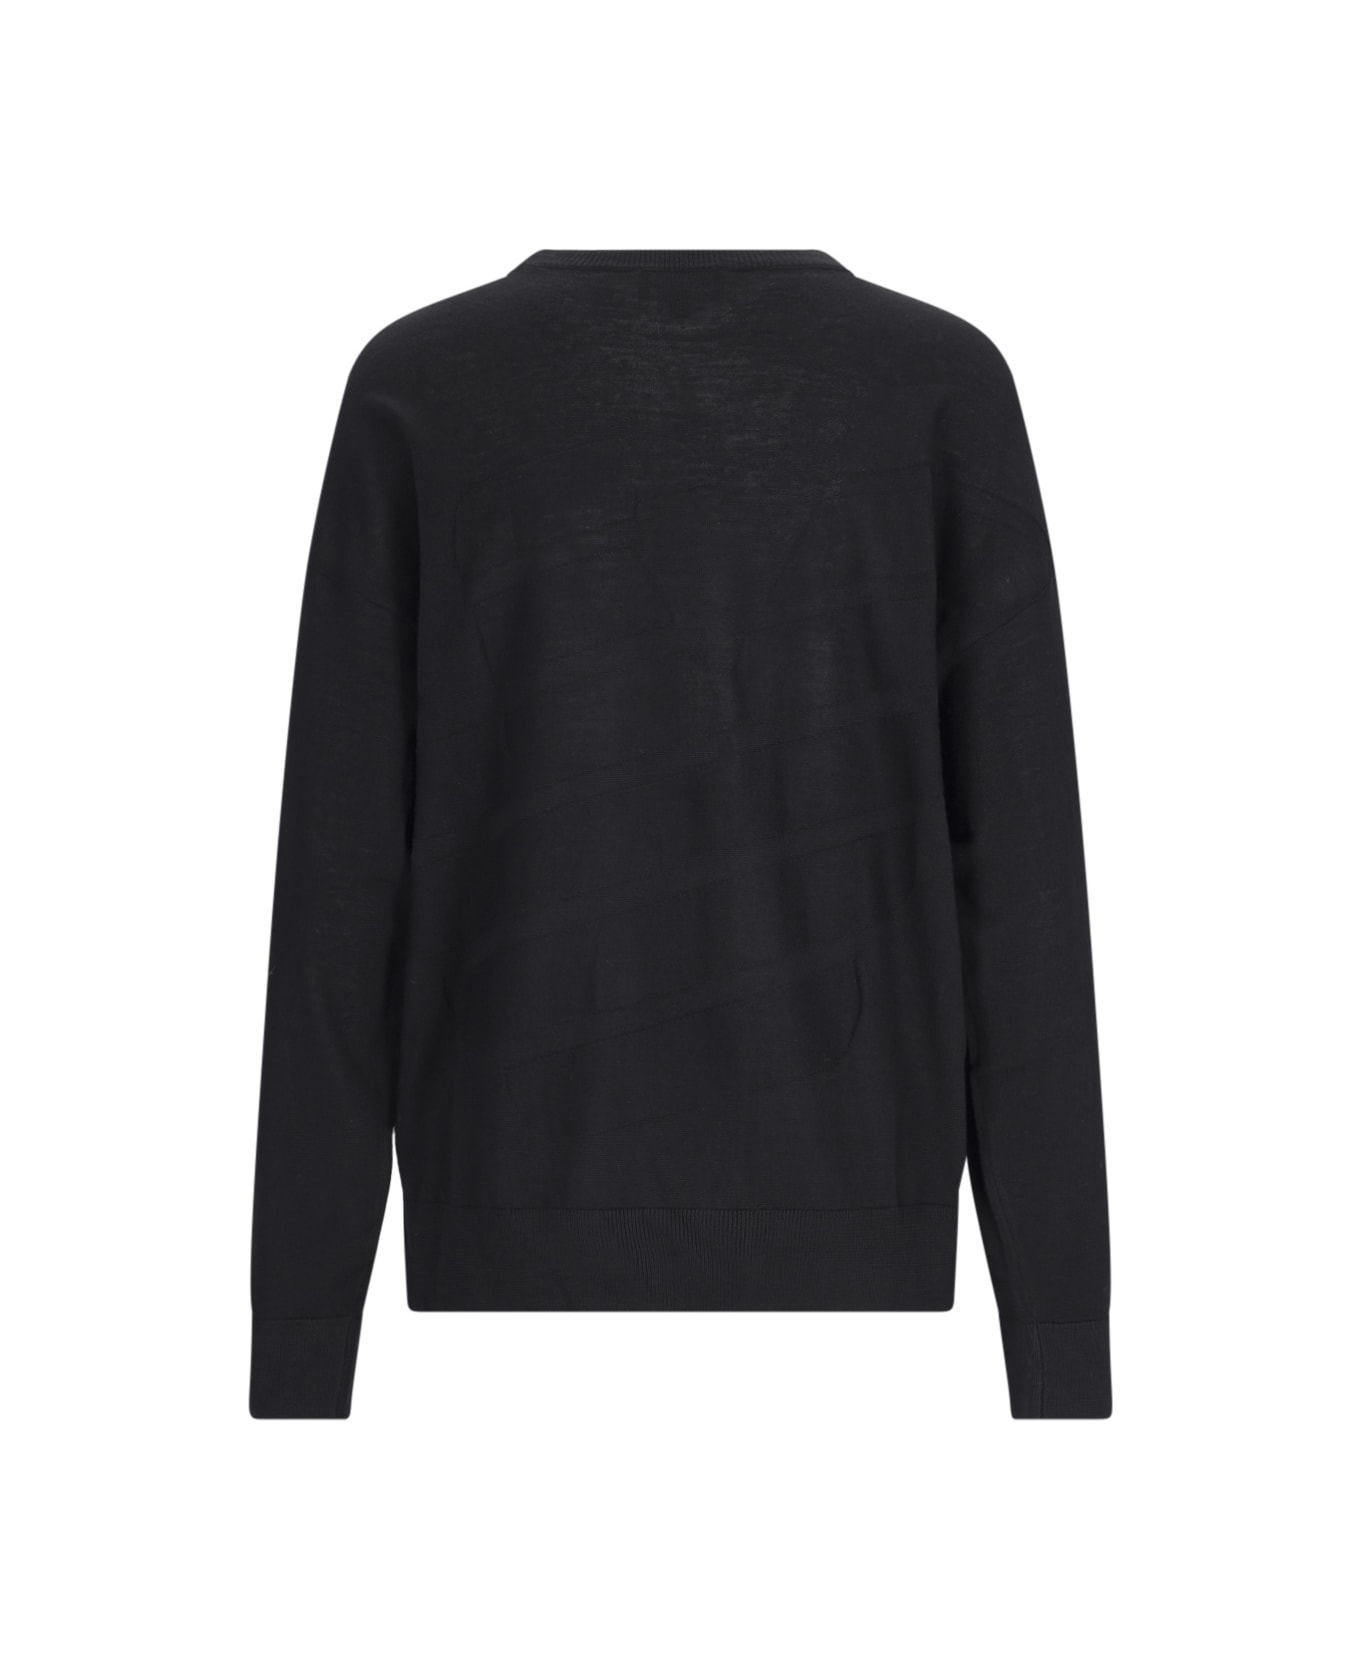 Emporio Armani Crew-neck Sweater - Black